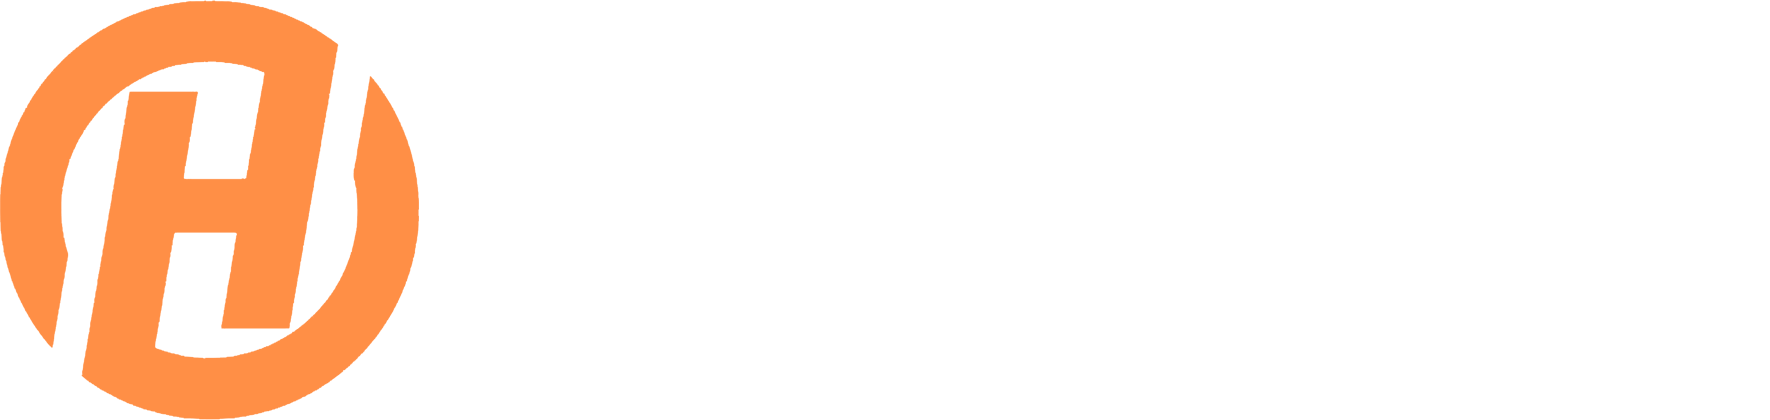 Henderson Lawn Care